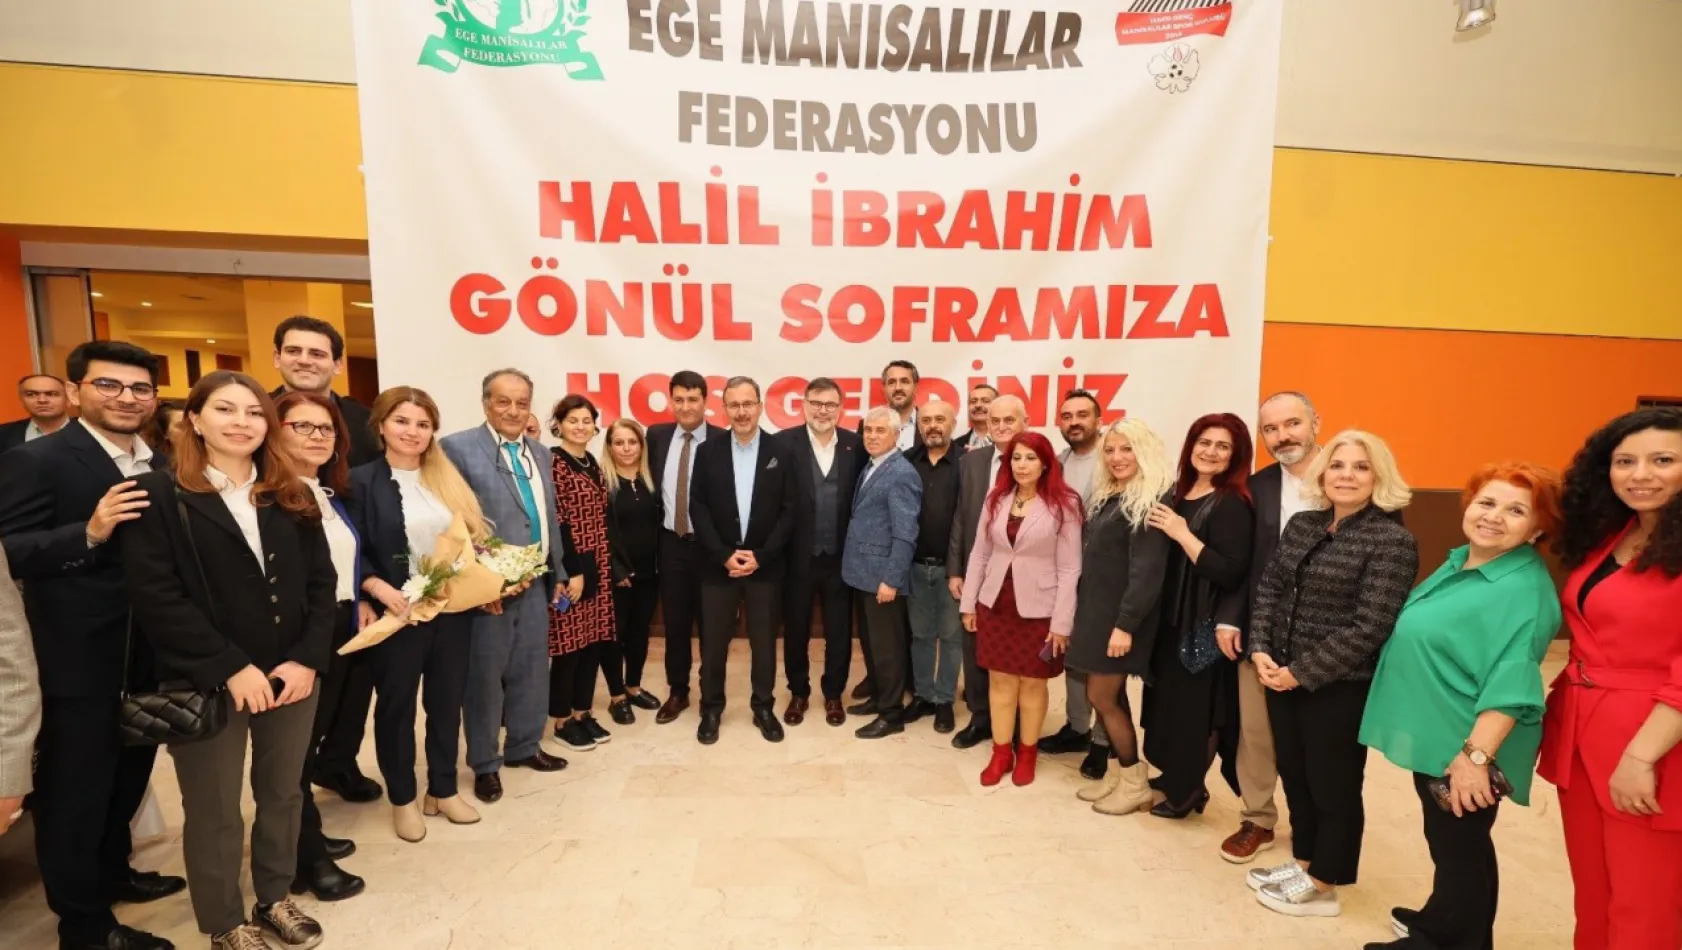 Ege Manisalılar Federasyonundan İzmir'de 2 bin kişilik iftar sofrası